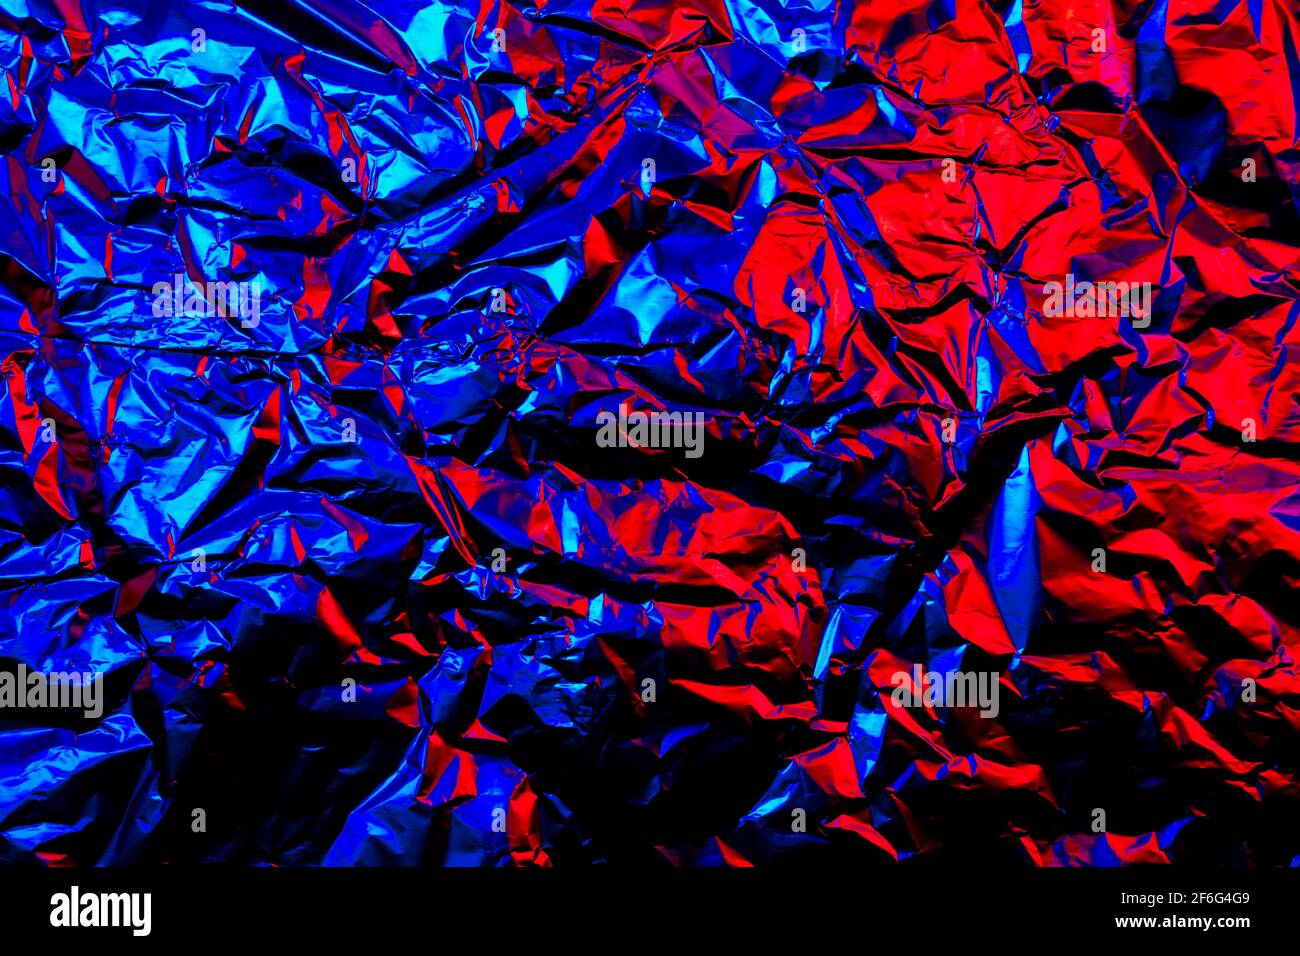 Abstrakt rot und blau Aluminium zerknittert Folie Hintergrund Textur reflektierend Rotes und blaues Licht Stockfoto